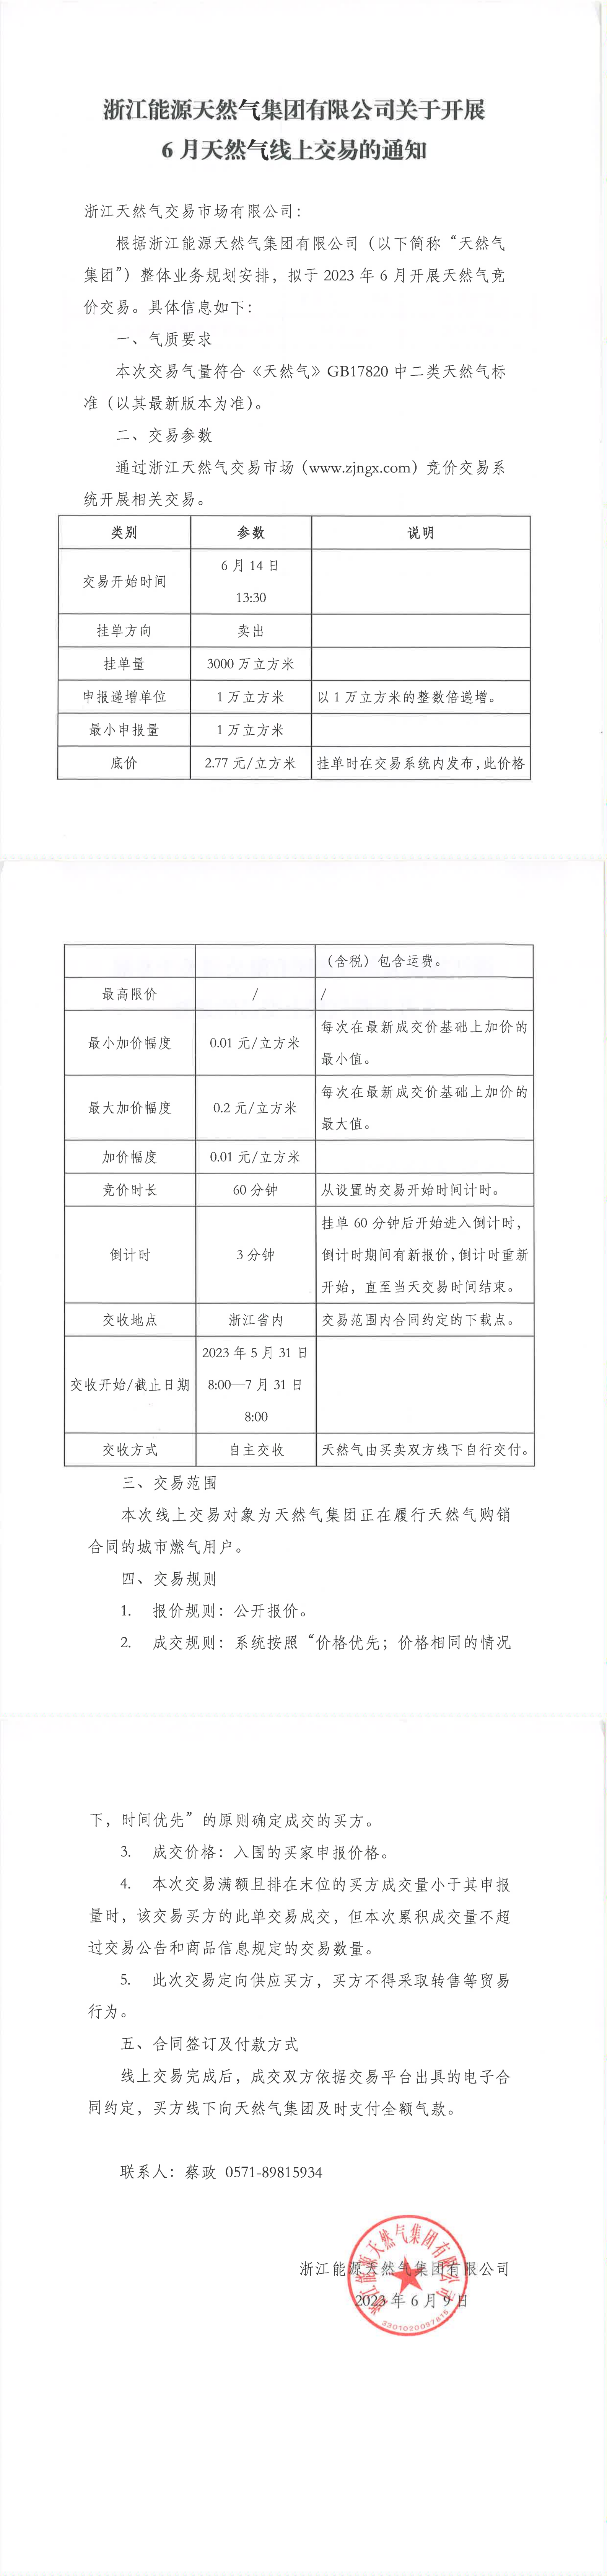 浙江能源天然气集团有限公司关于开展6月天然气线上交易的通知_00.png